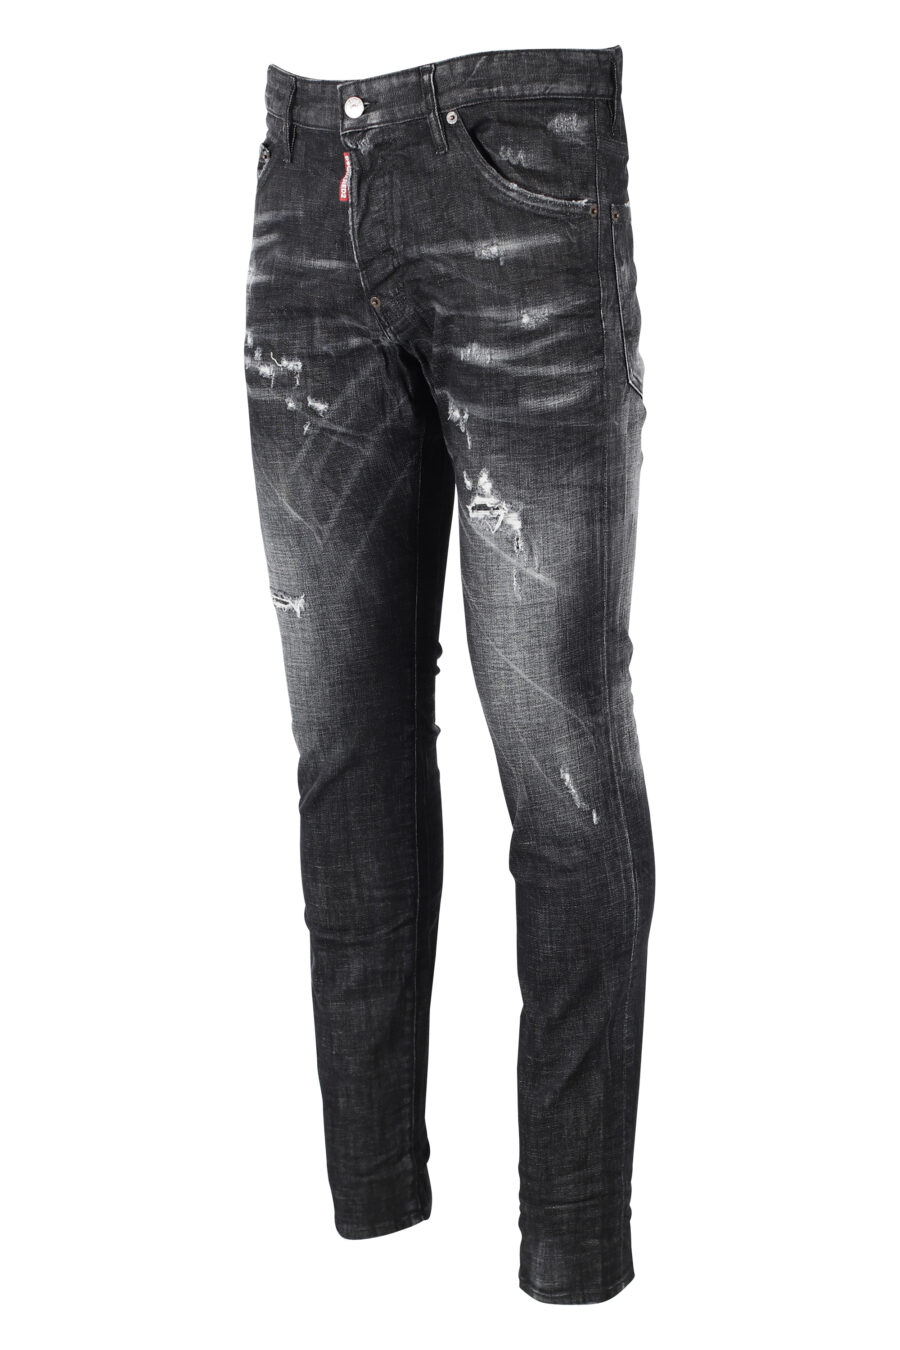 Pantalón negro "Cool Guy" semidesgastado con rotos - IMG 0847